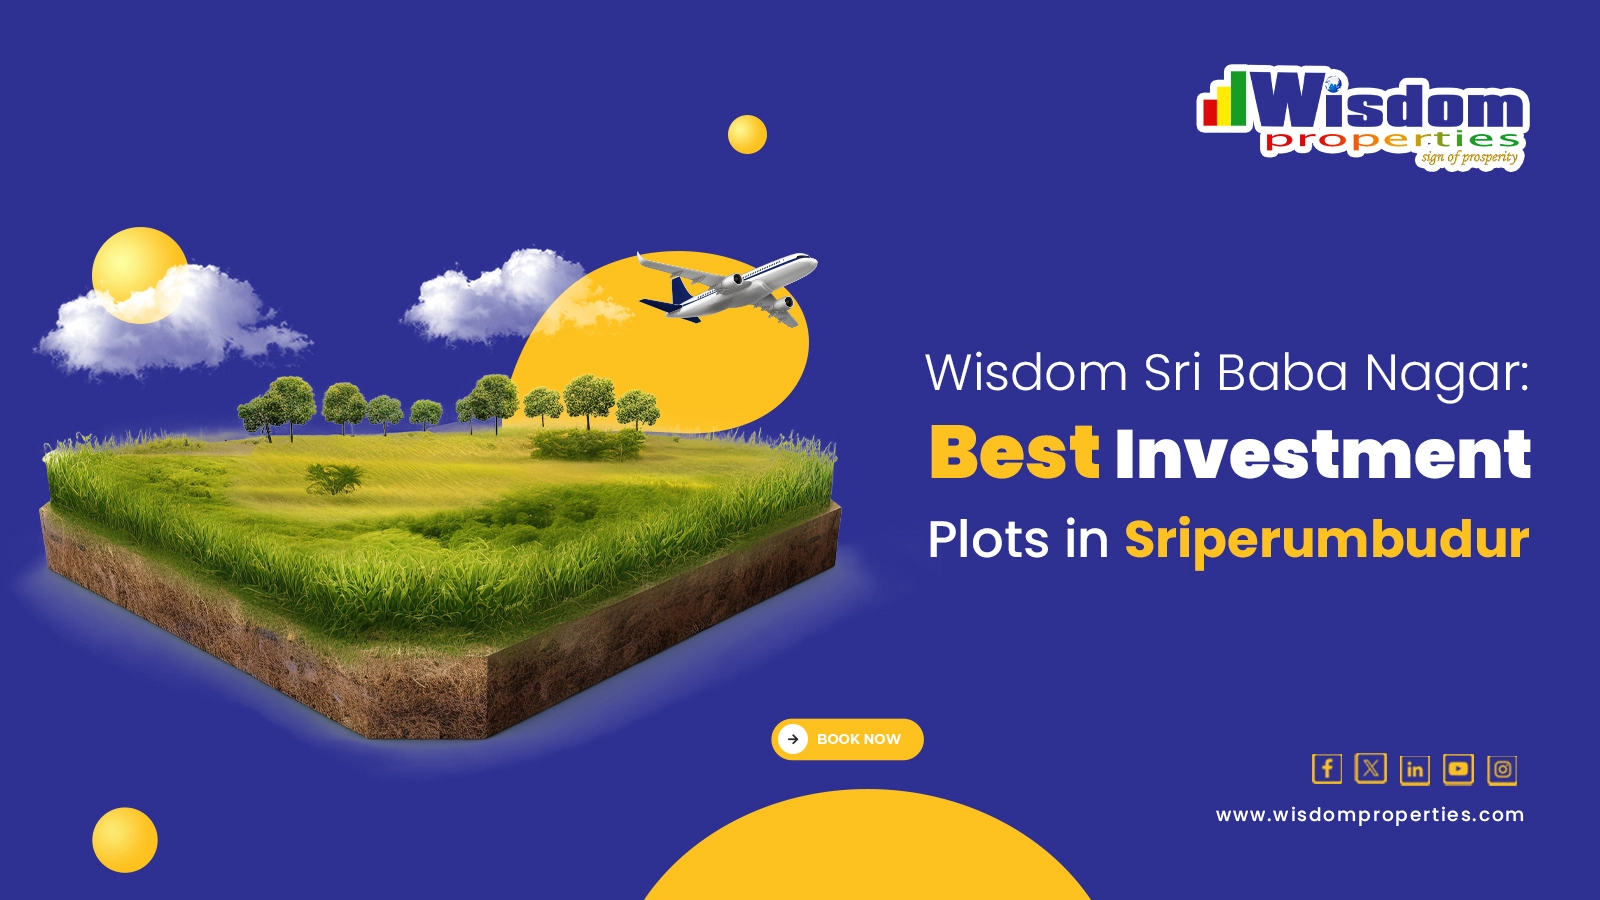 Best Investment Plots in Sriperumbudur